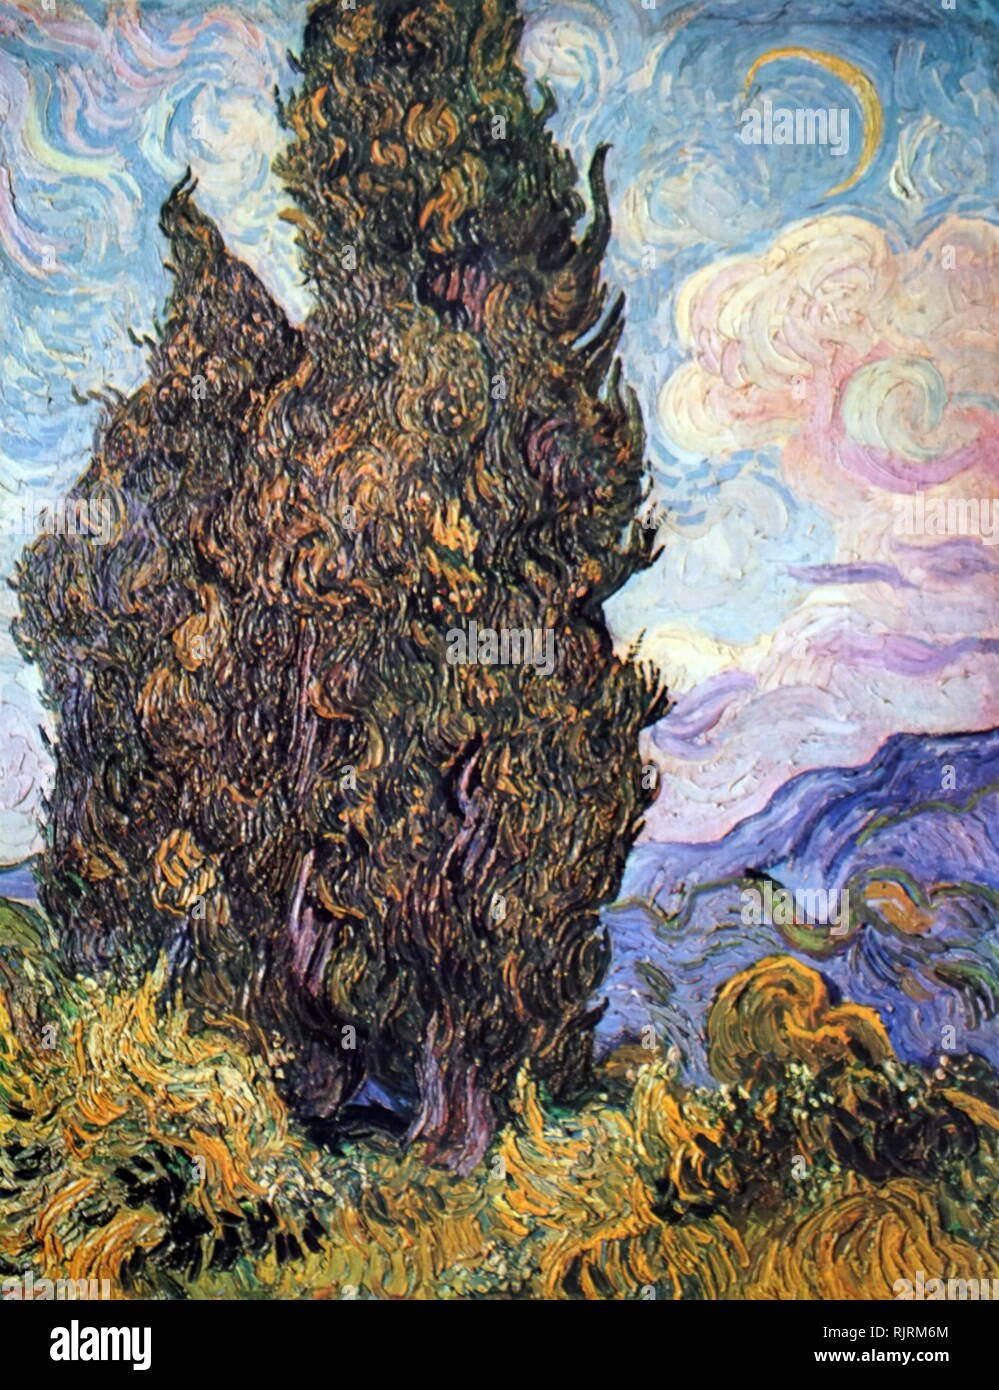 Cipressi; 1889, olio su tela, dell'artista olandese Vincent van Gogh (1853-1890). Dipinto poco dopo Van Gogh ha iniziato la sua yearlong soggiorno all'asilo in Saint-Remy) Foto Stock